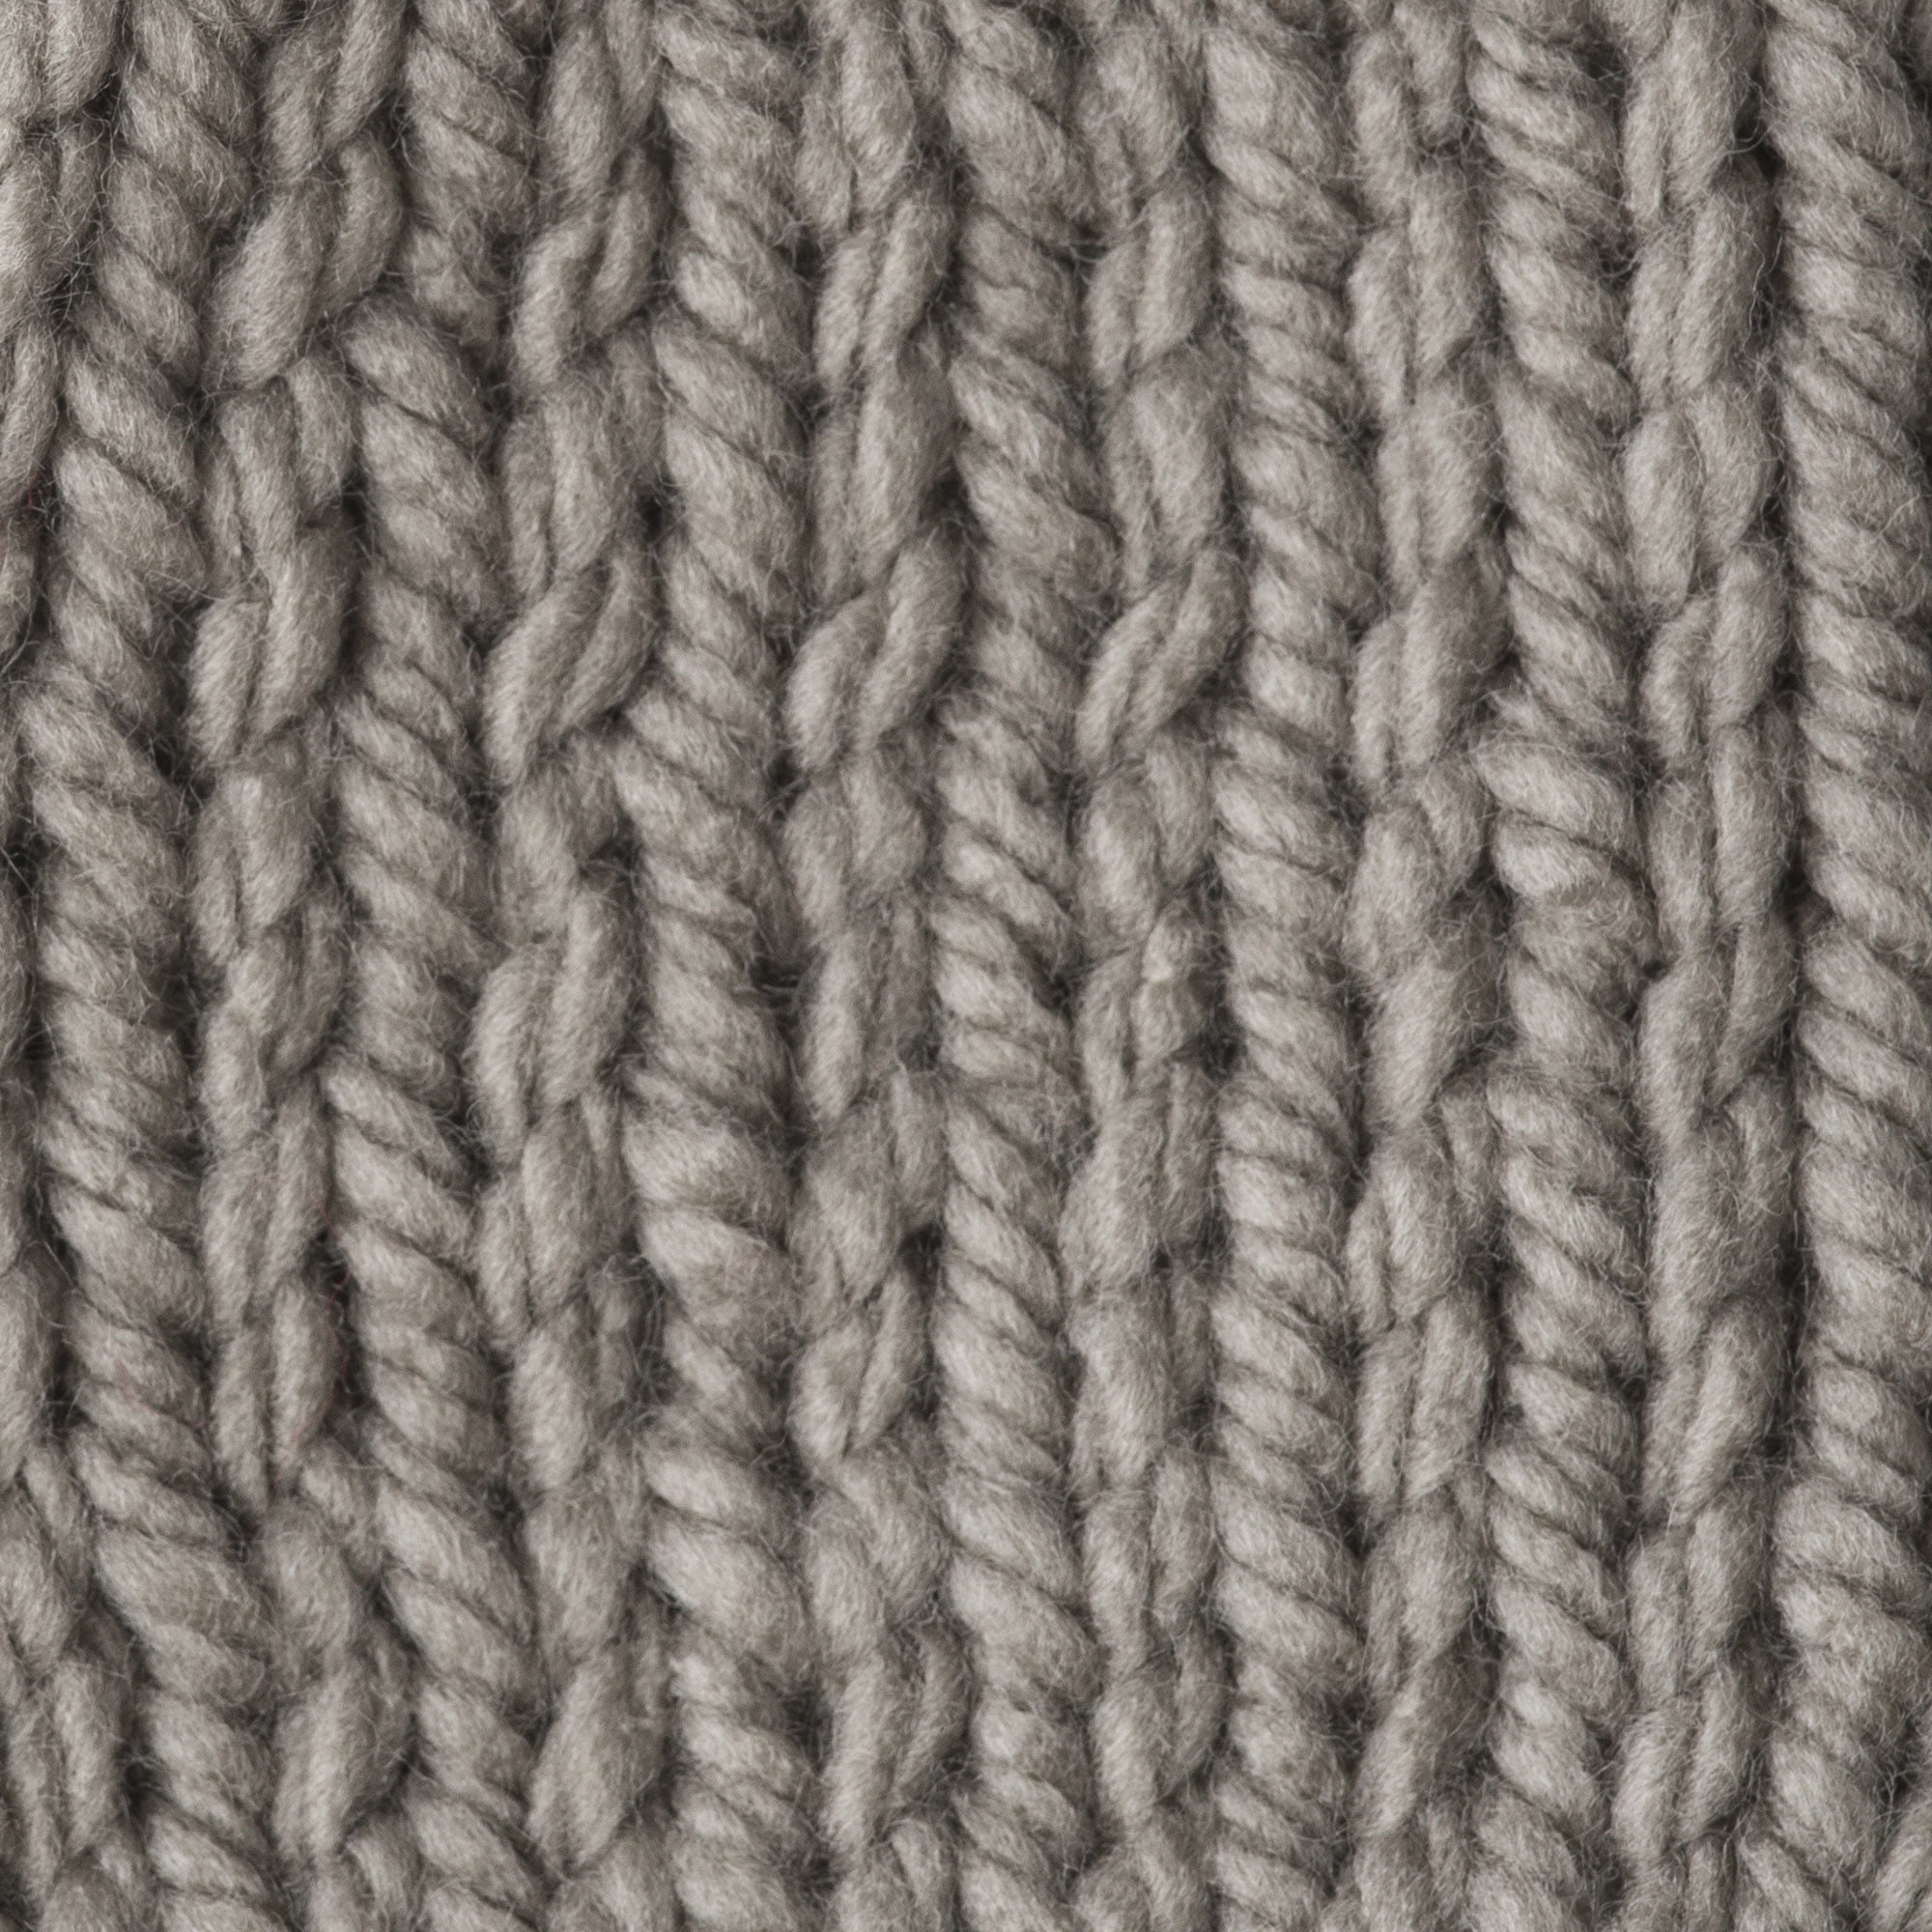 Sewing & Craft, Crochet Yarn🧶thick Yarn